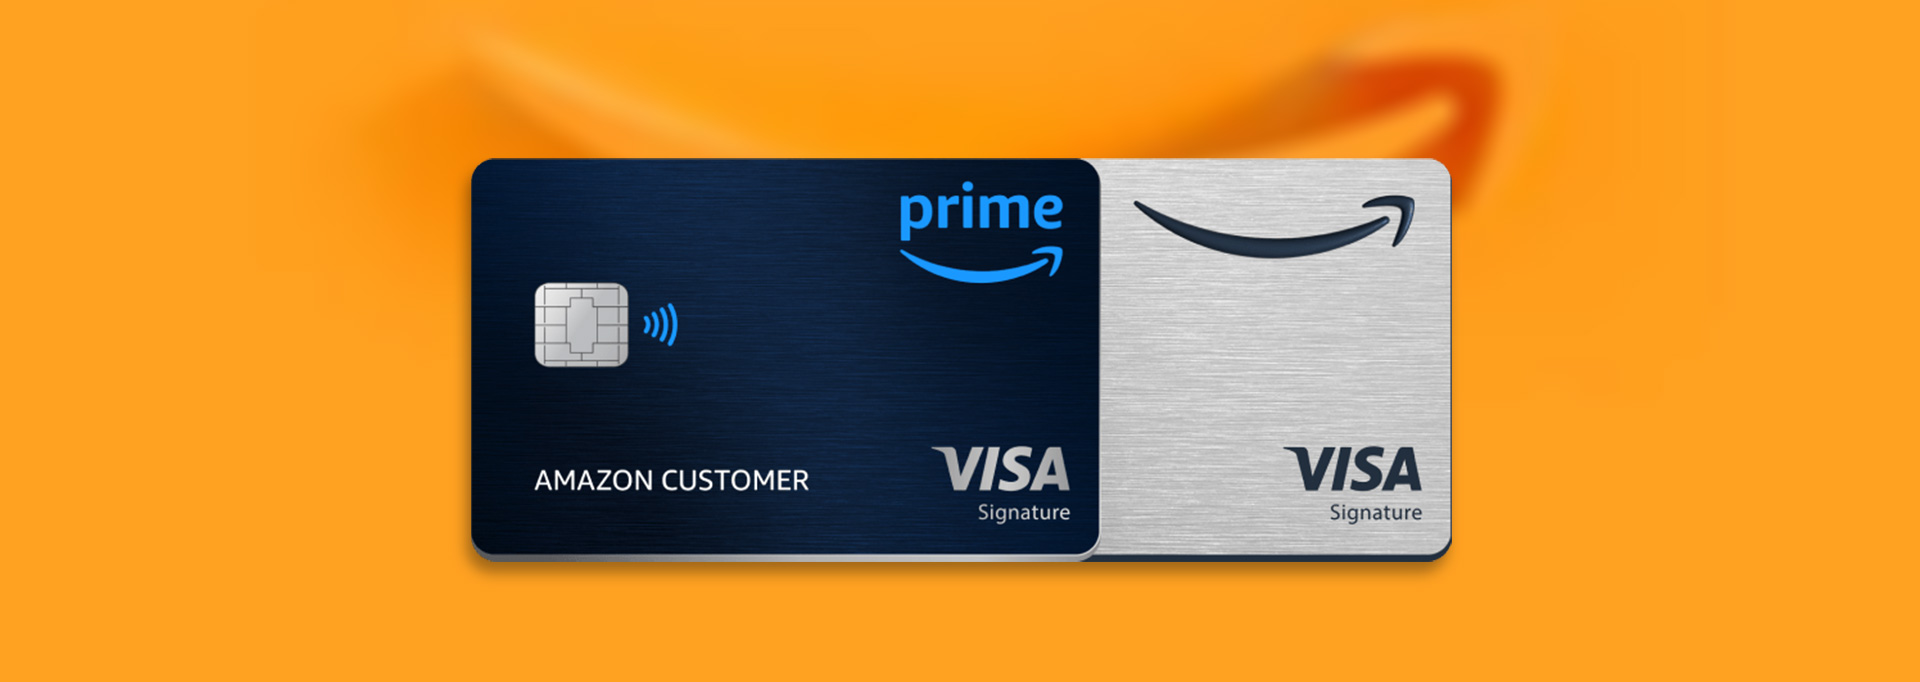 Amazon Rewards credit cards